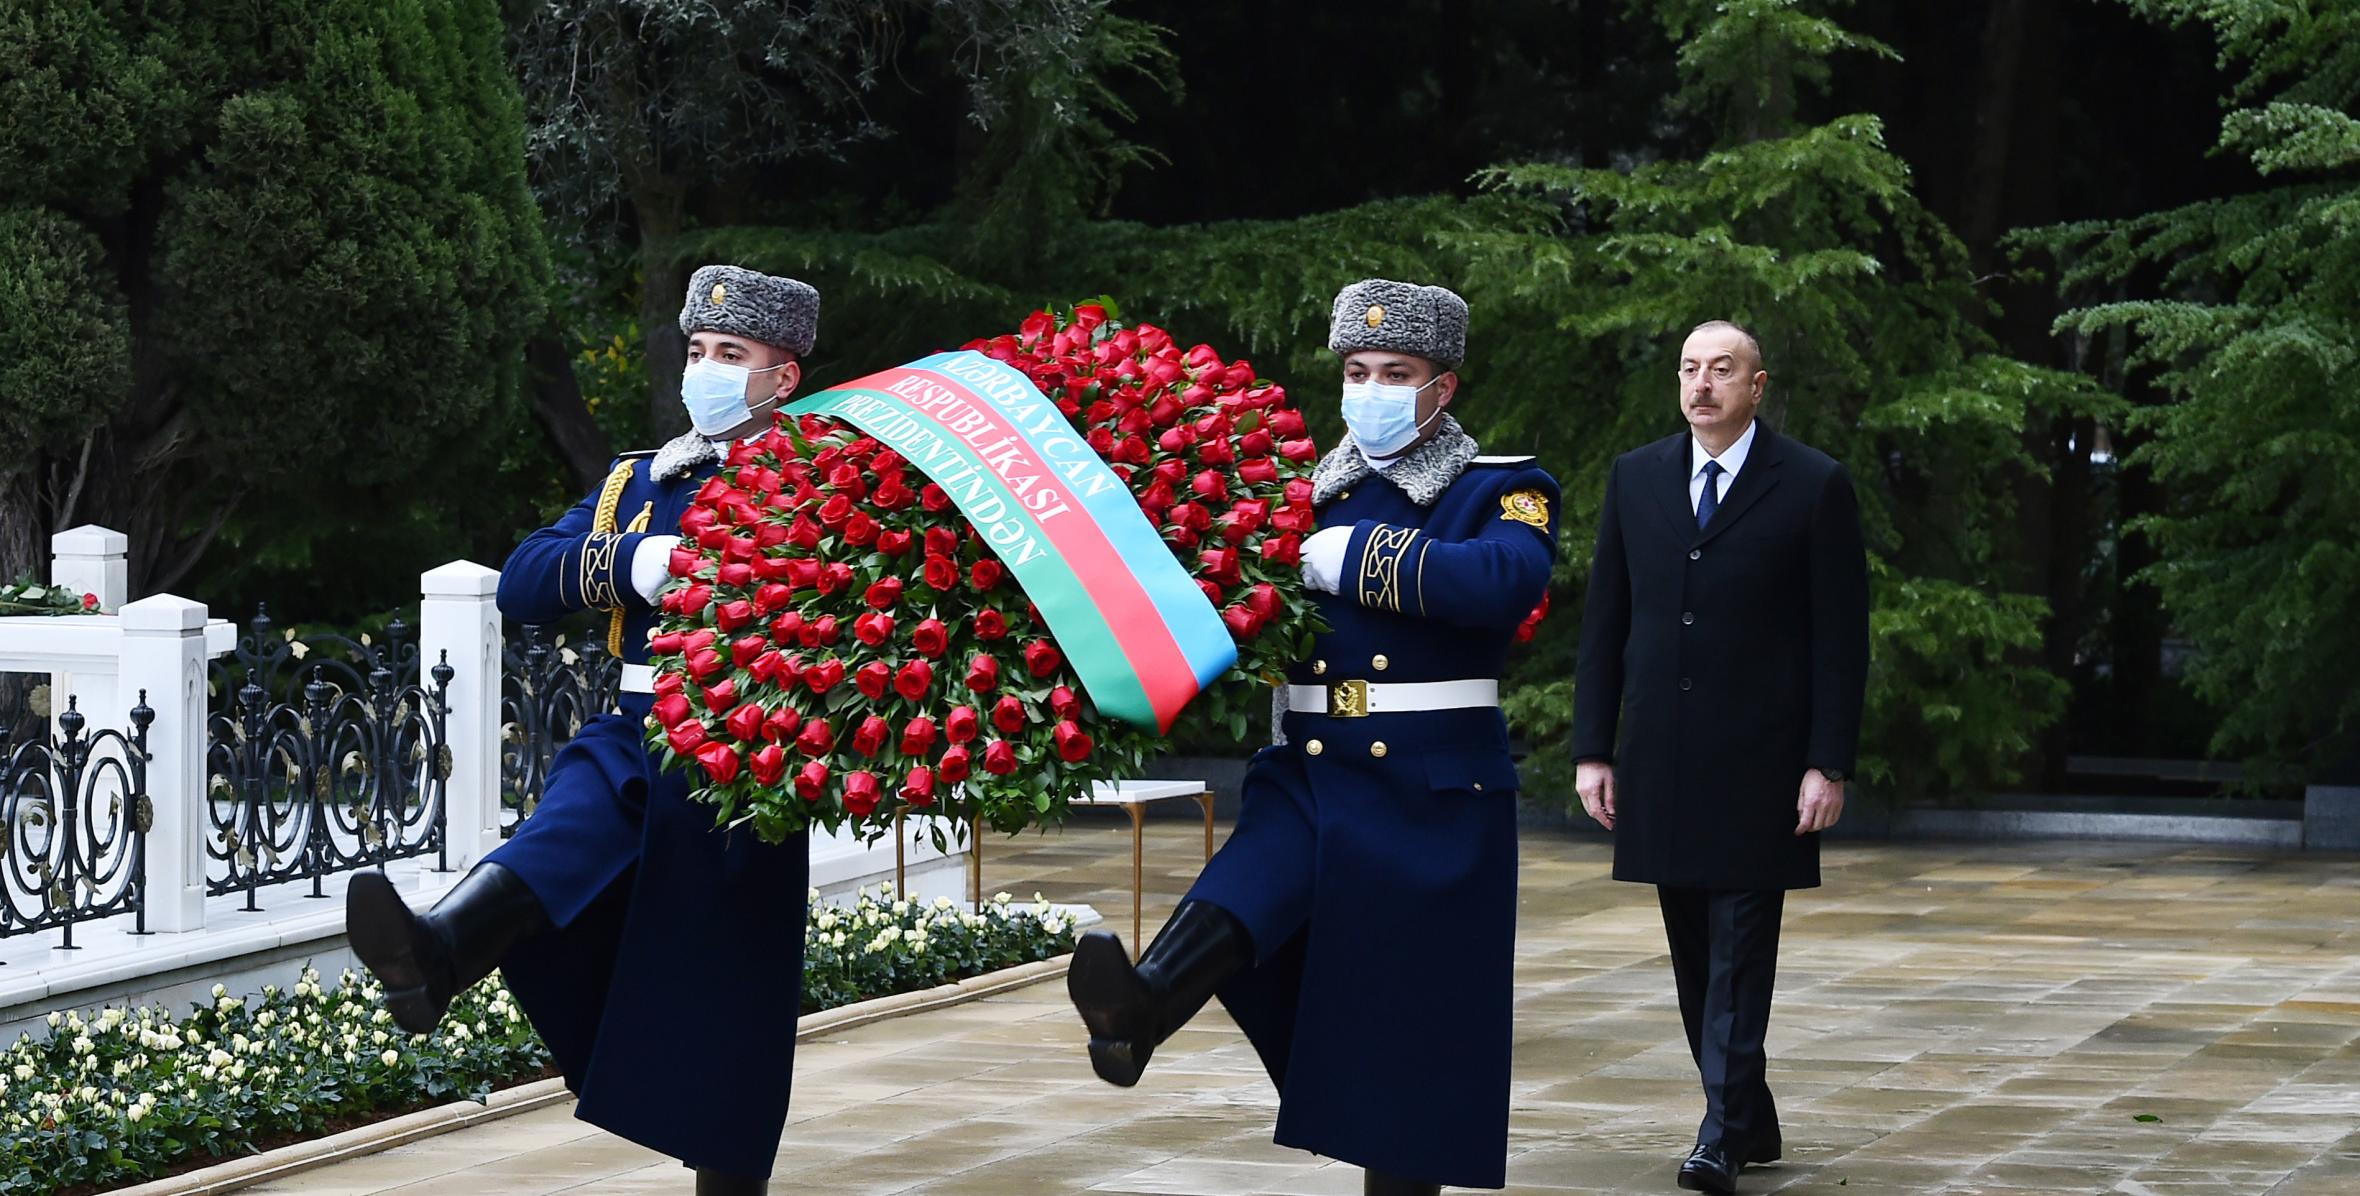 Ilham Aliyev and first lady Mehriban Aliyeva visited grave of national leader Heydar Aliyev